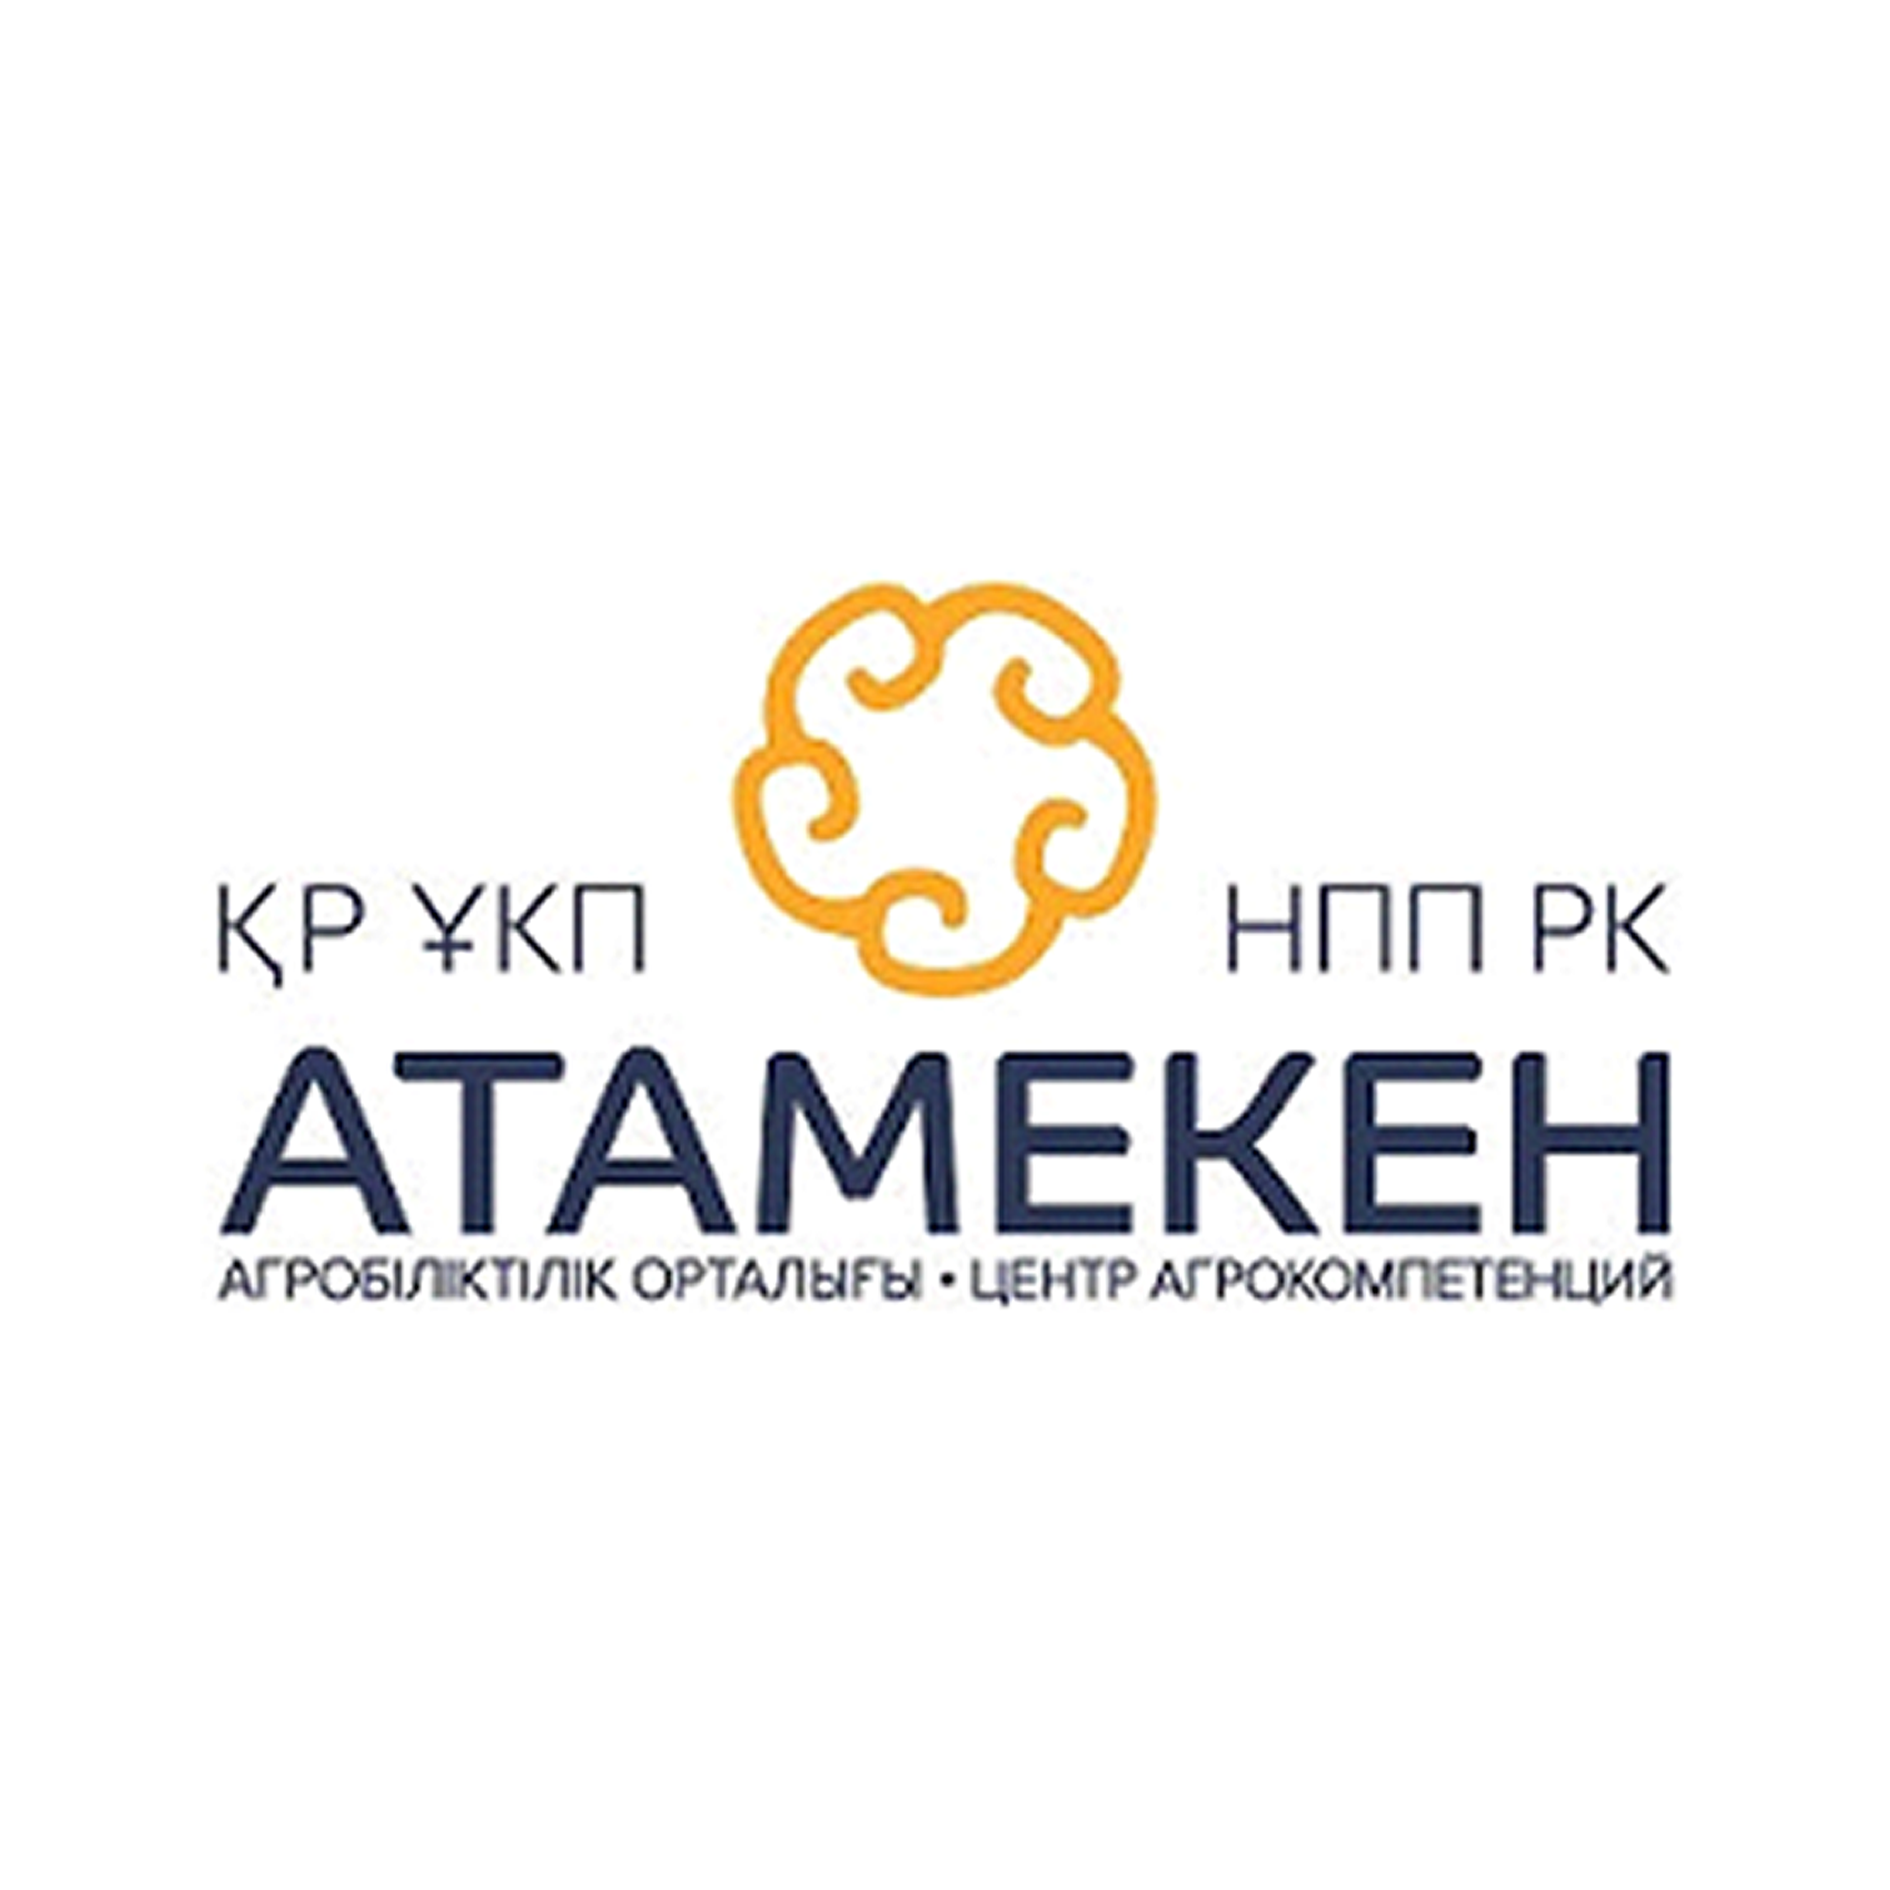 Атамекен логотип. Атамекен палата предпринимателей. НПП Атамекен логотип. Национальная палата предпринимателей РК Казахстан.